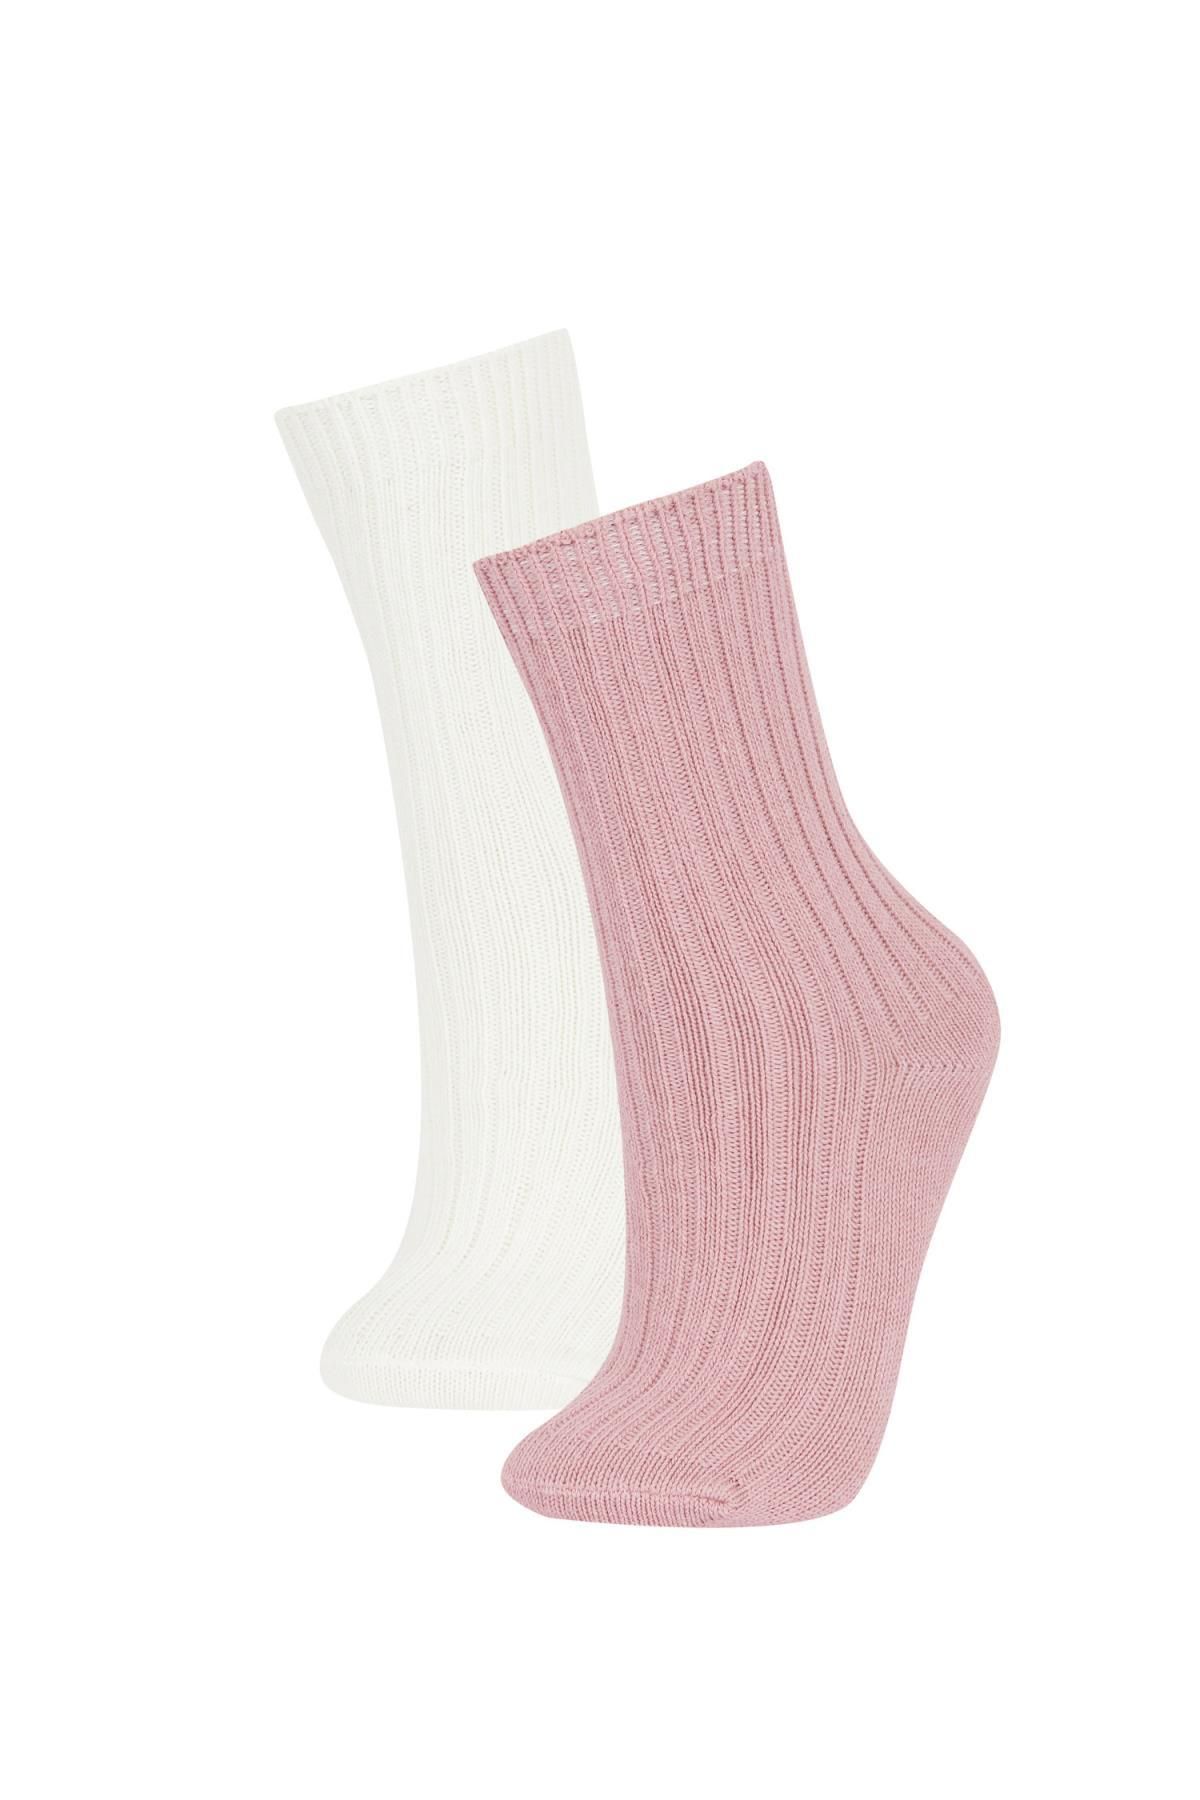 Defacto Kadın 2'li Pamuklu Kışlık Çorap Y7654azns